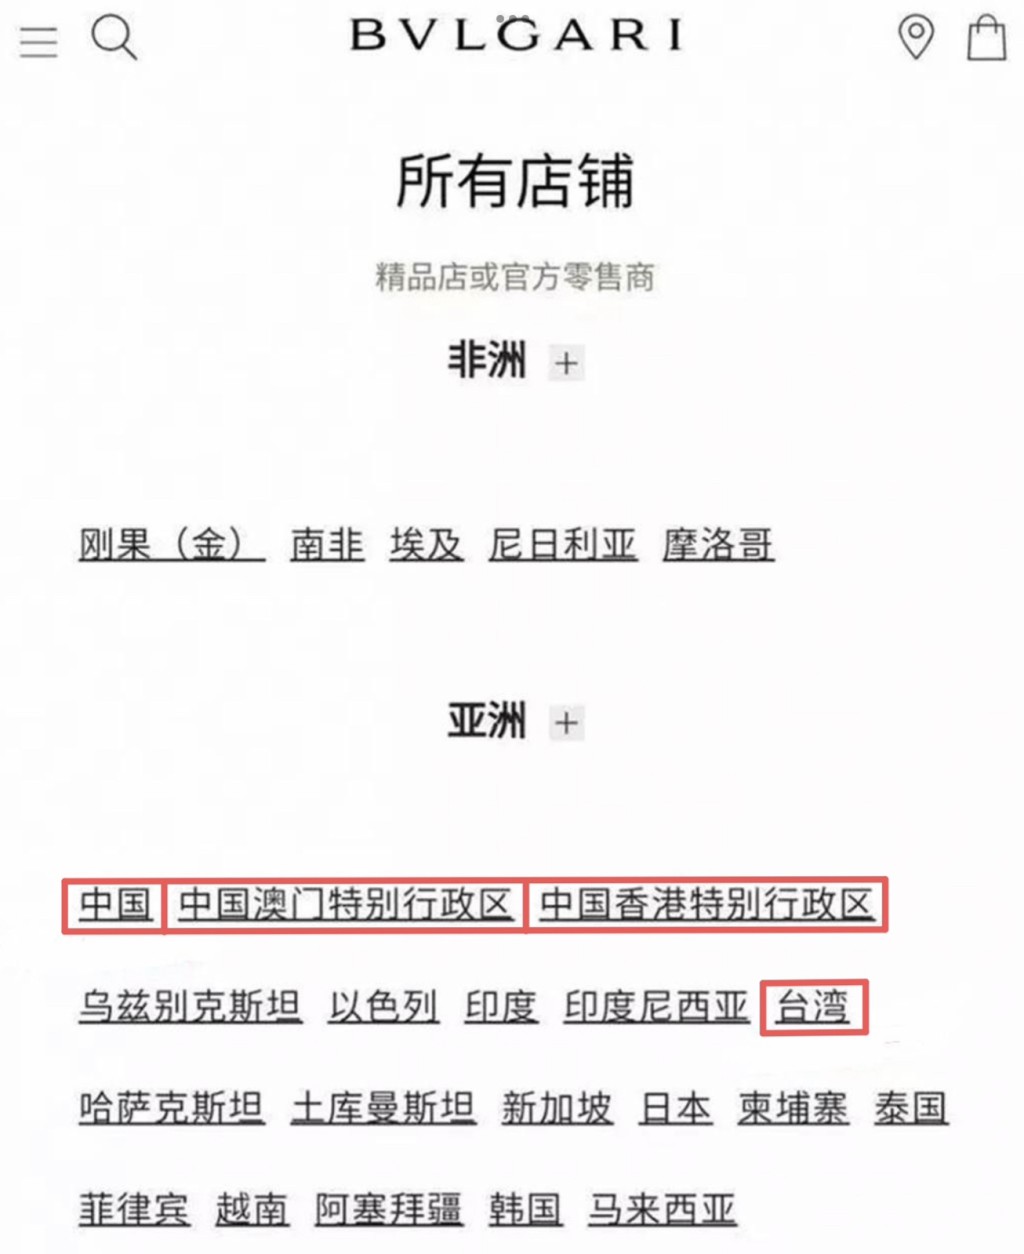 BVLGARI 官網疑將台灣列為國家。